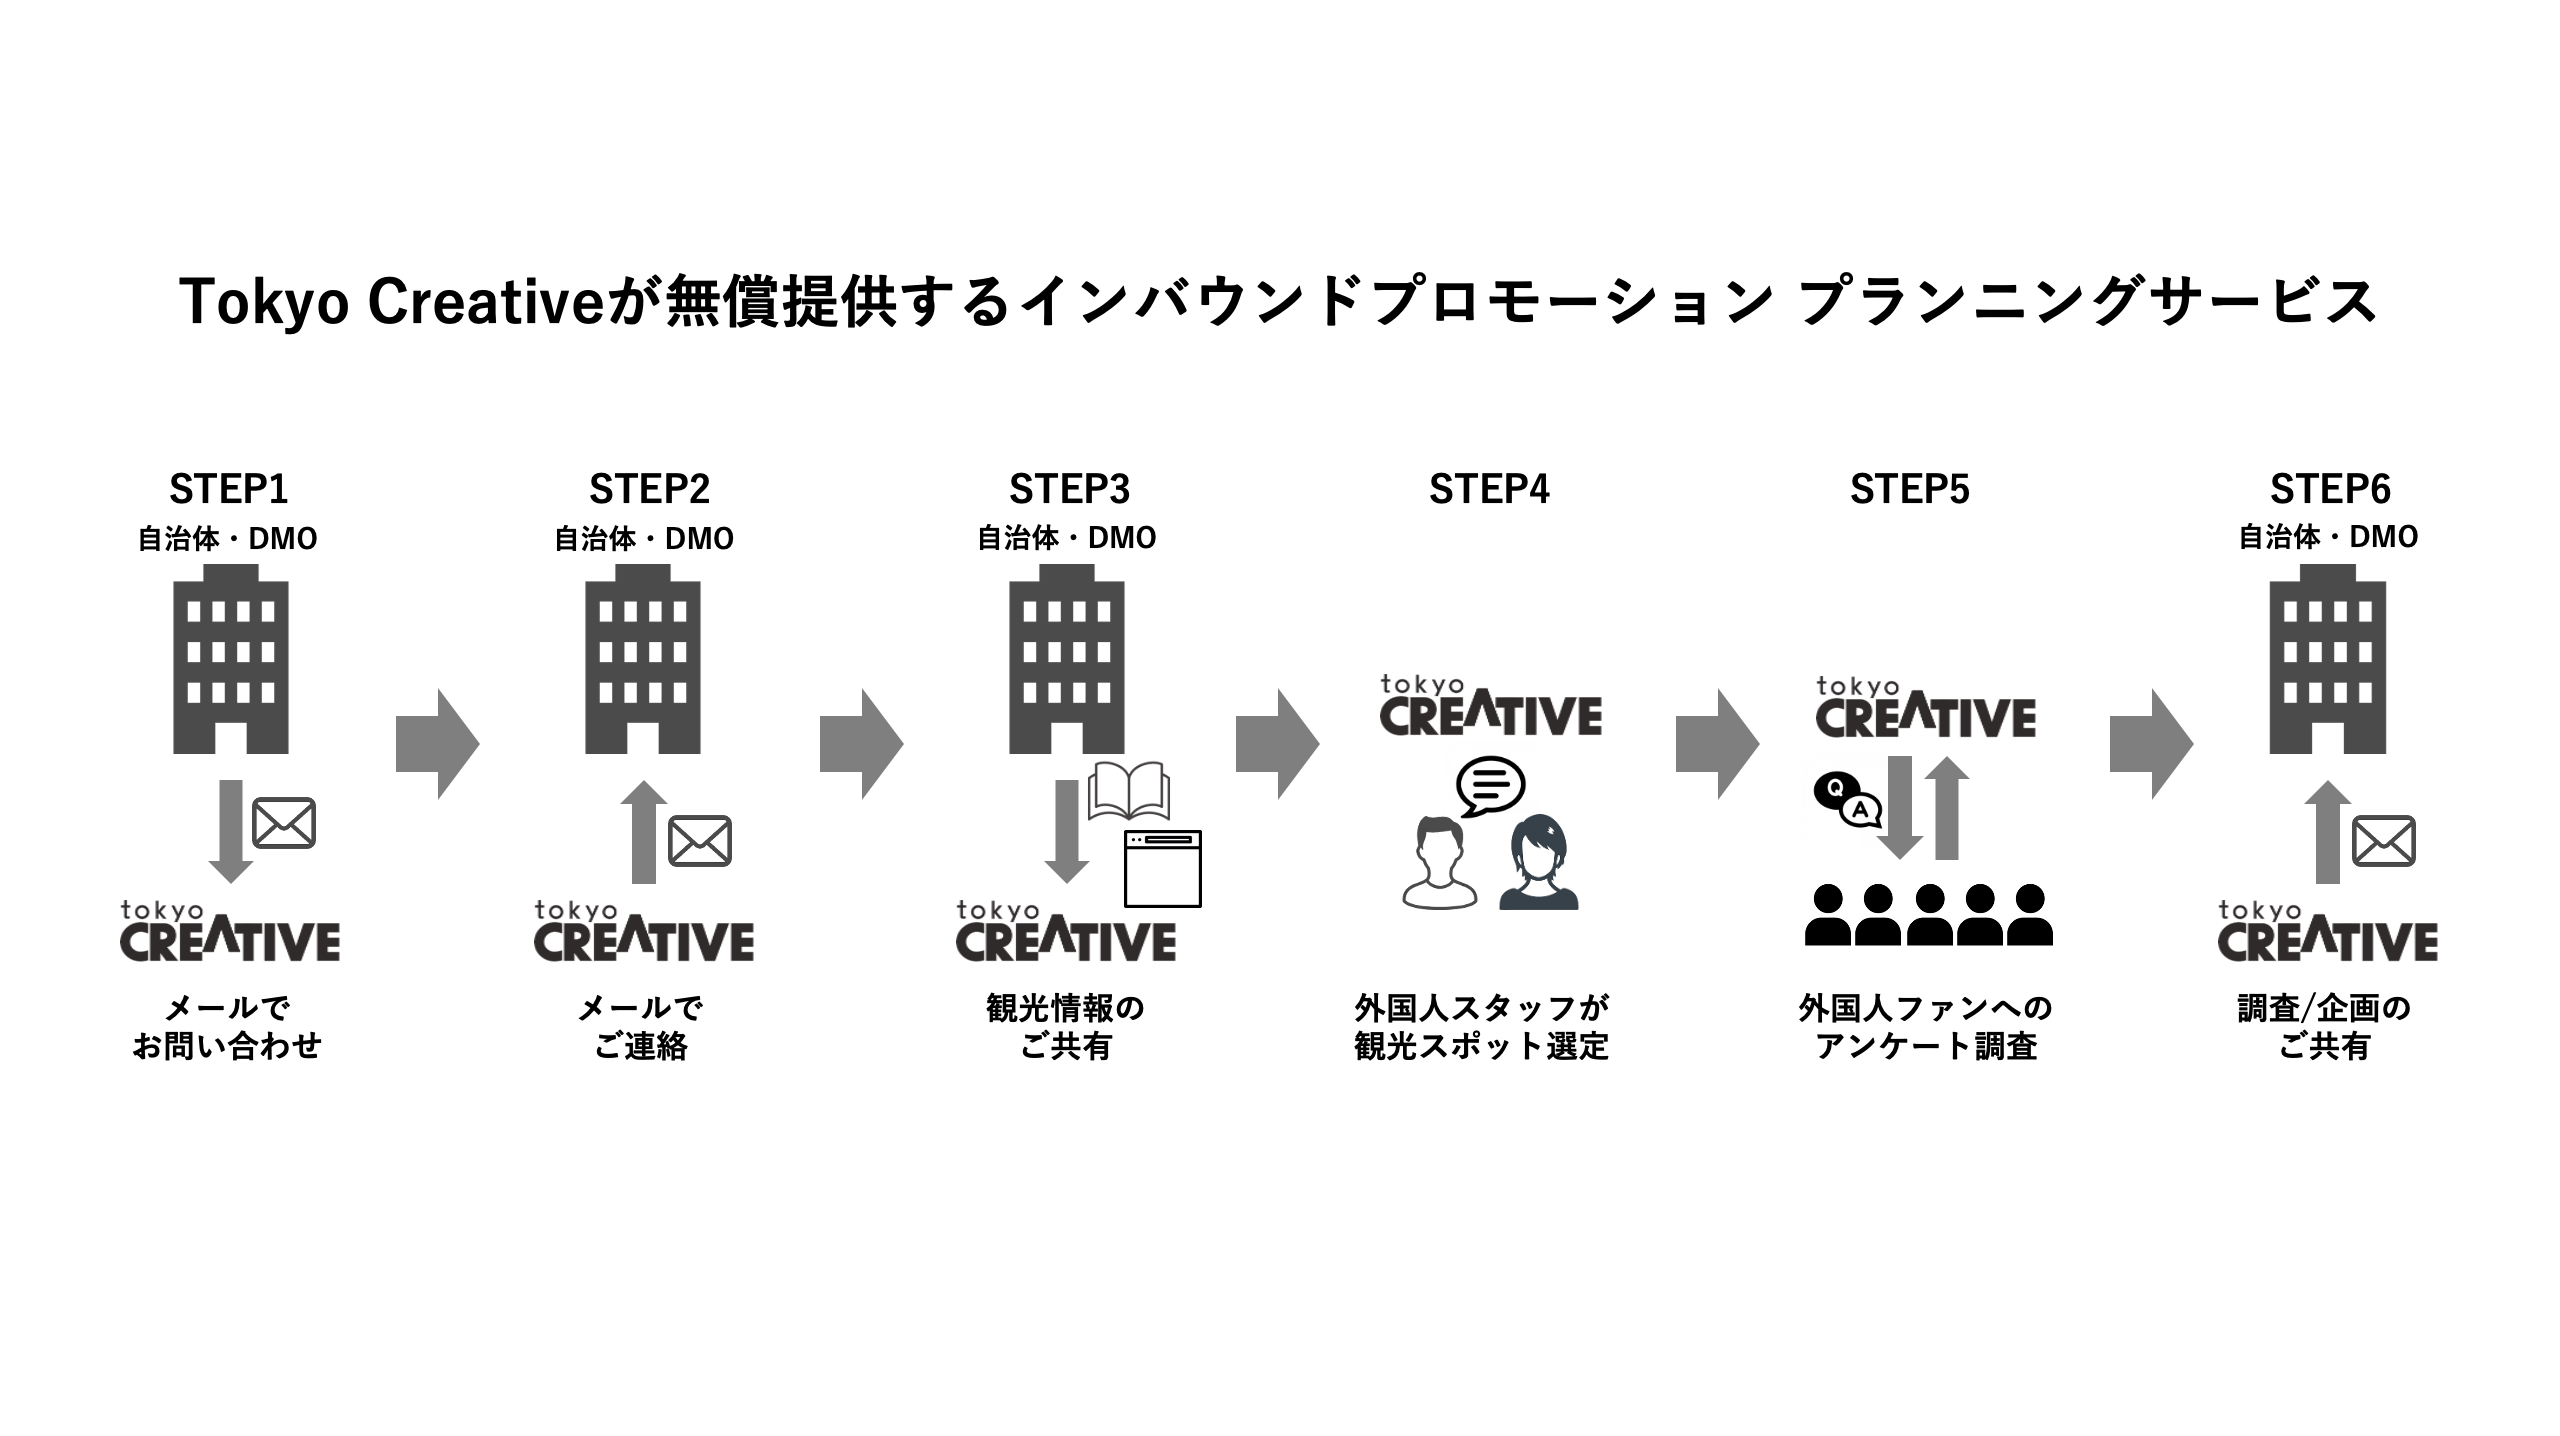 コロナ対策 無料 自治体 Dmoインバウンドプロモーション プランニングサービス無料提供開始 Tokyo Creative株式会社のプレスリリース